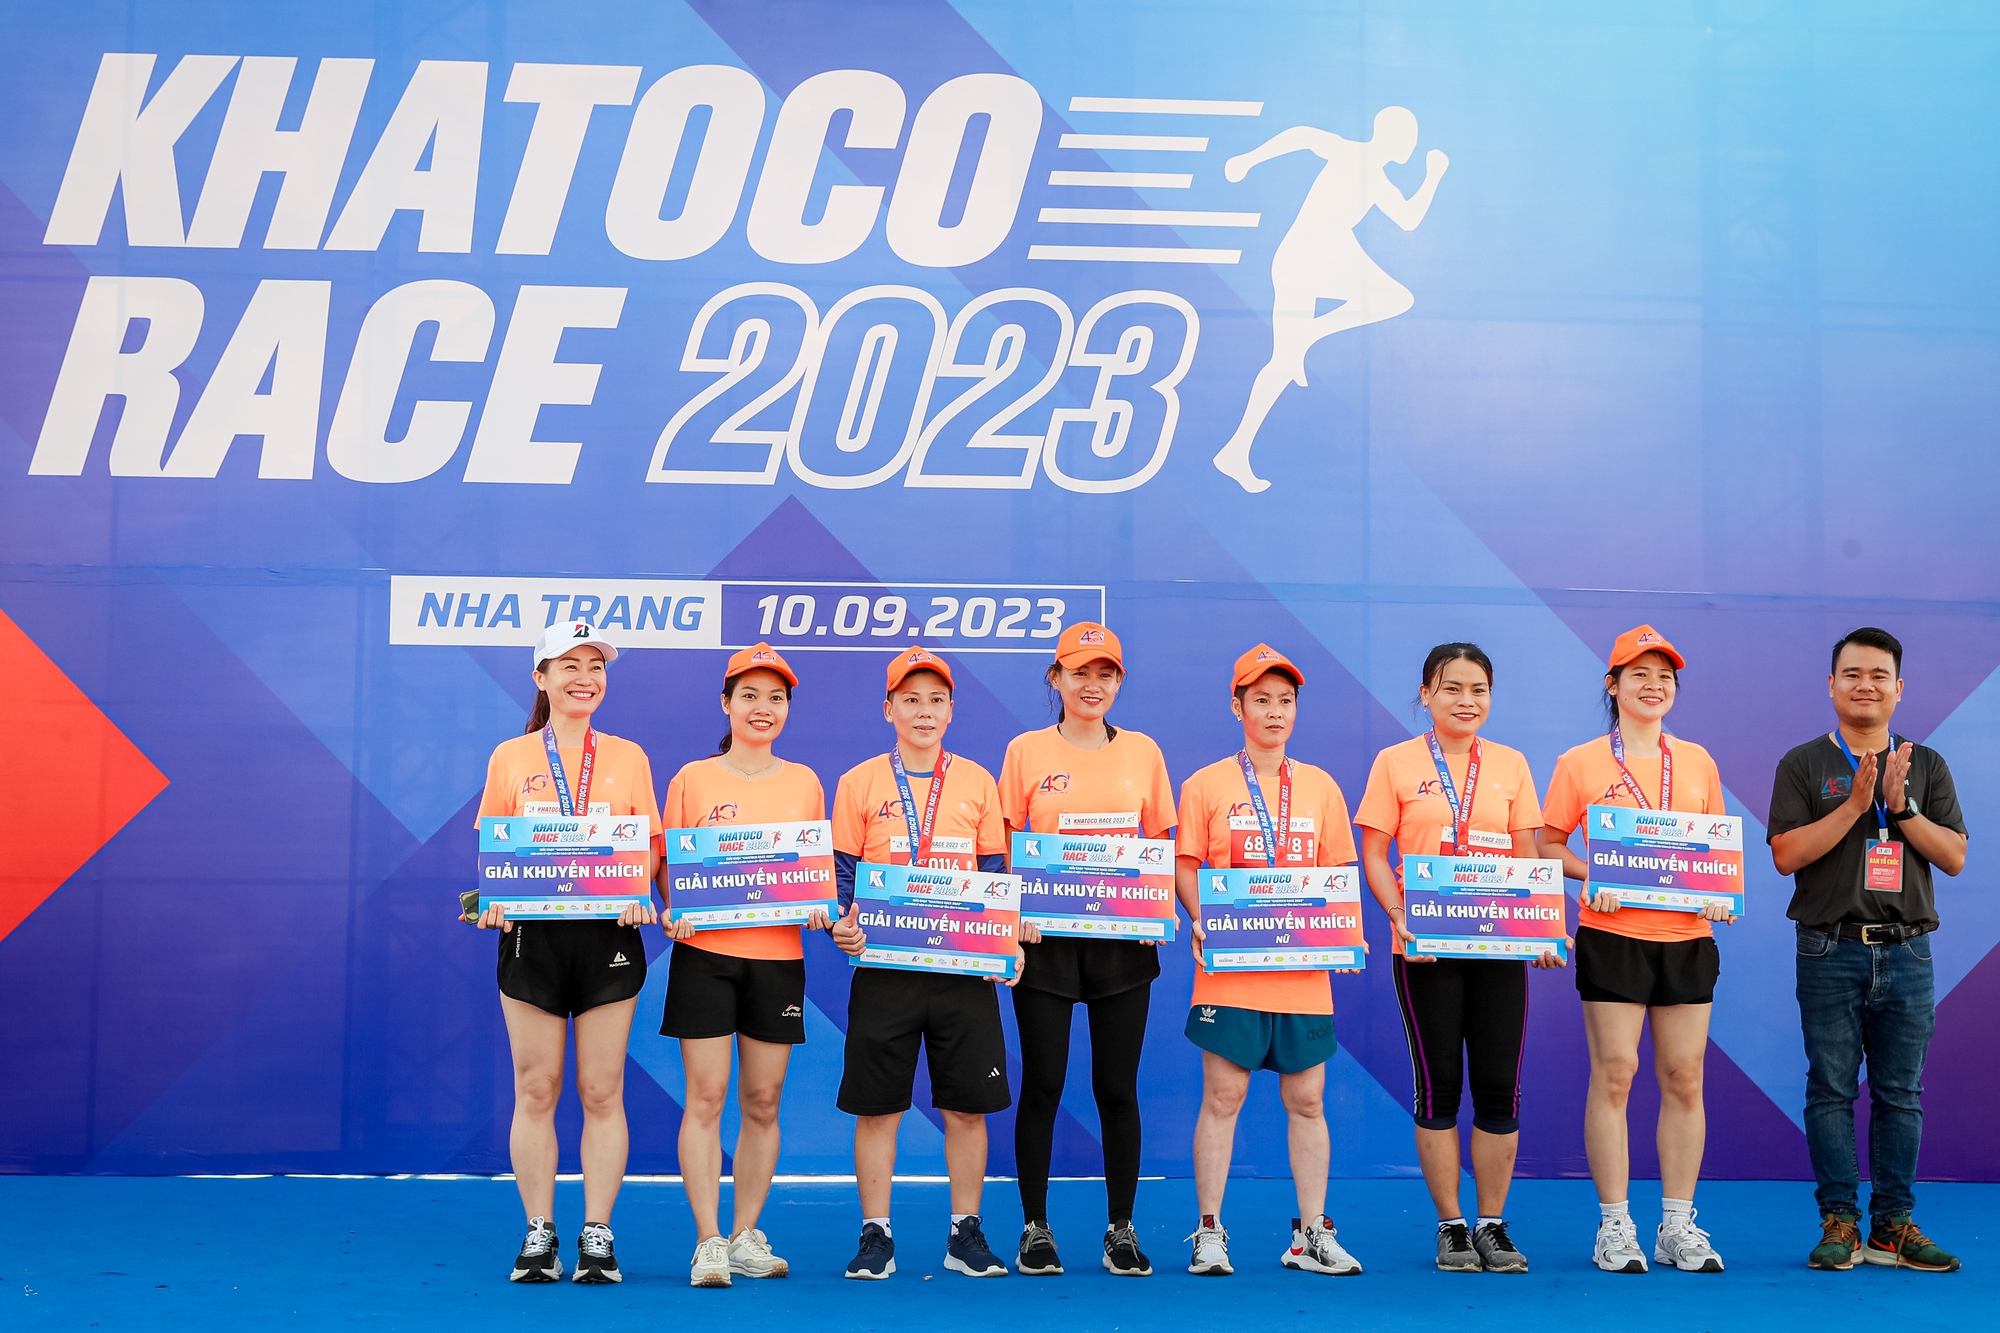 Giải chạy Khatoco Race 2023 thu hút hơn 1.300 vận động viên - Ảnh 8.